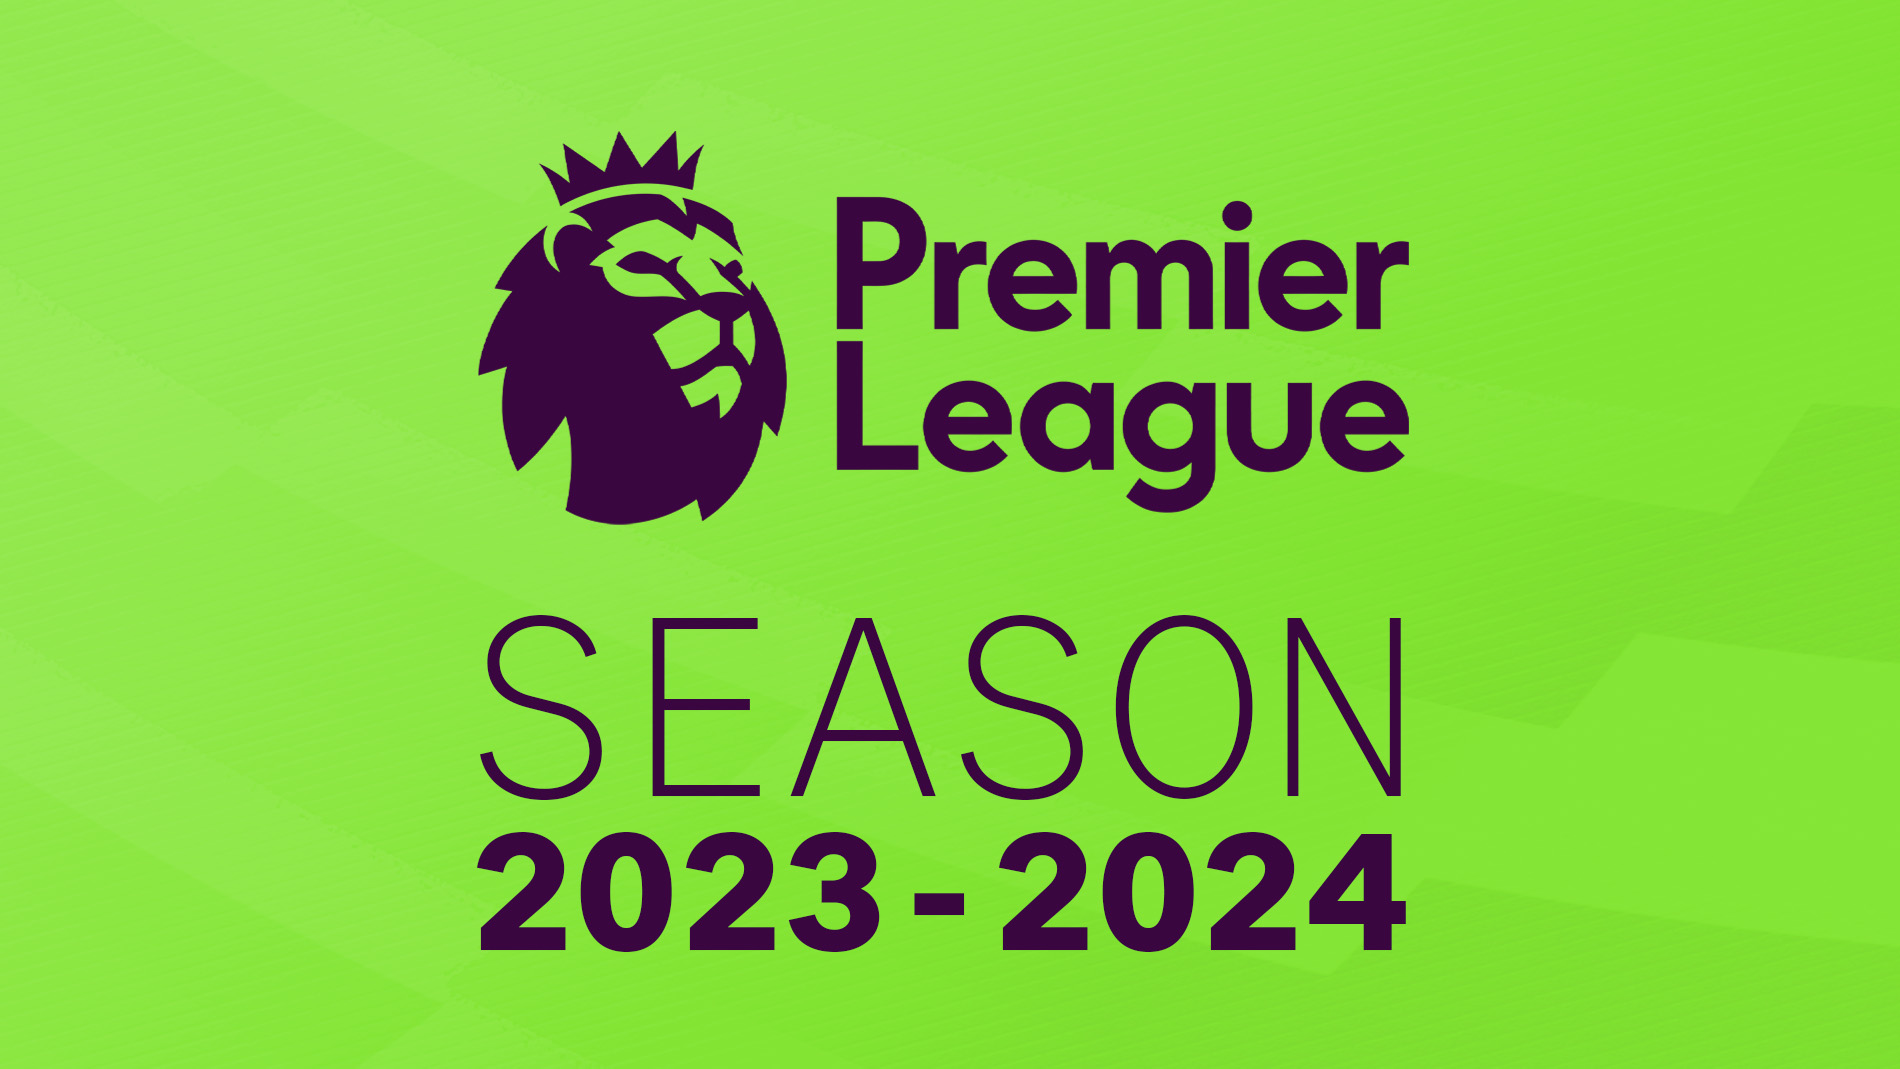 Premier League 2023/24